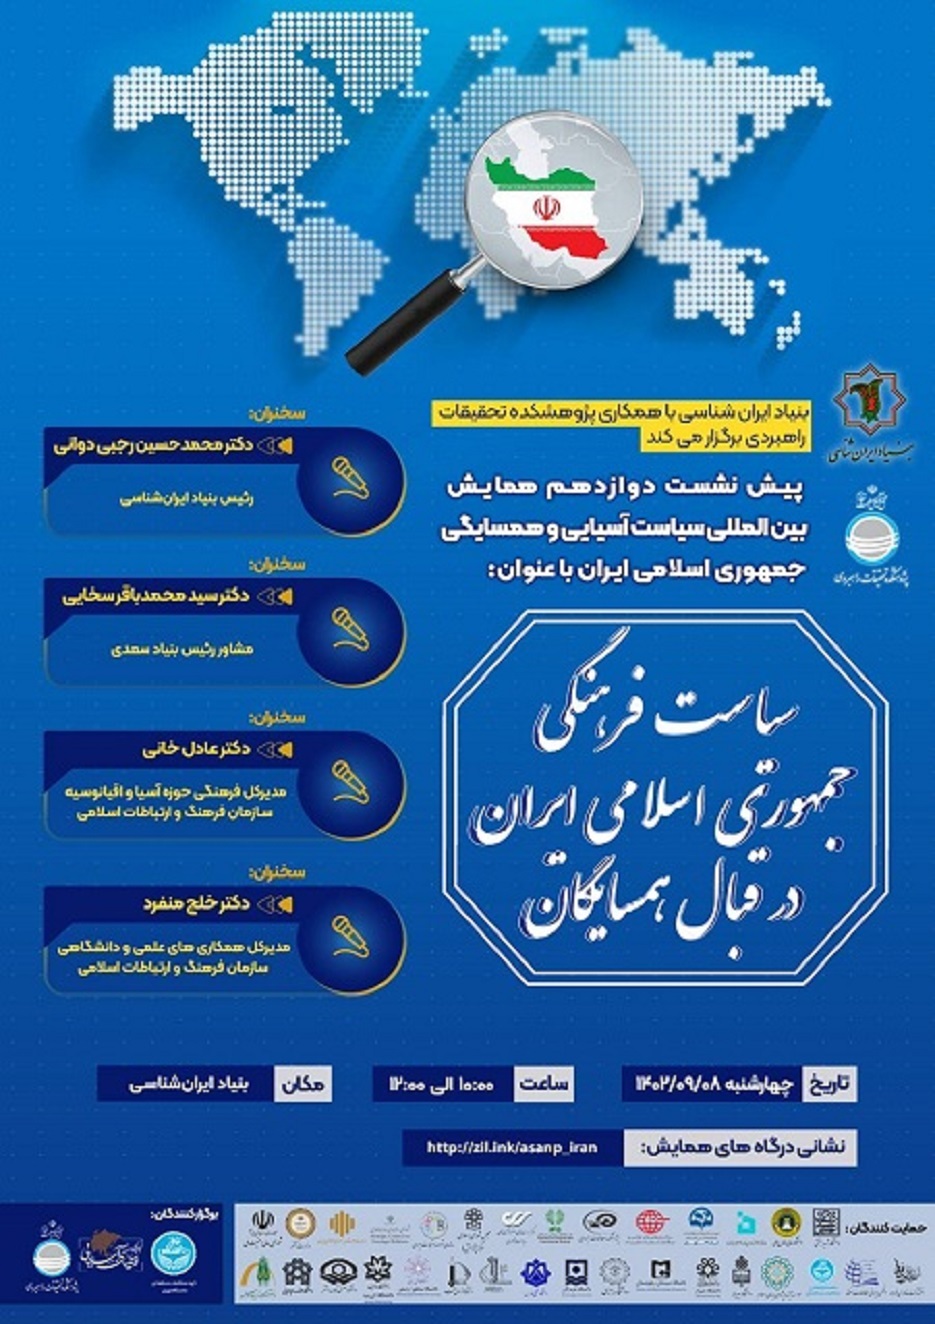 بنیاد ایران شناسی با همکاری پژوهشکده تحقیقات راهبردی برگزار می‌کند